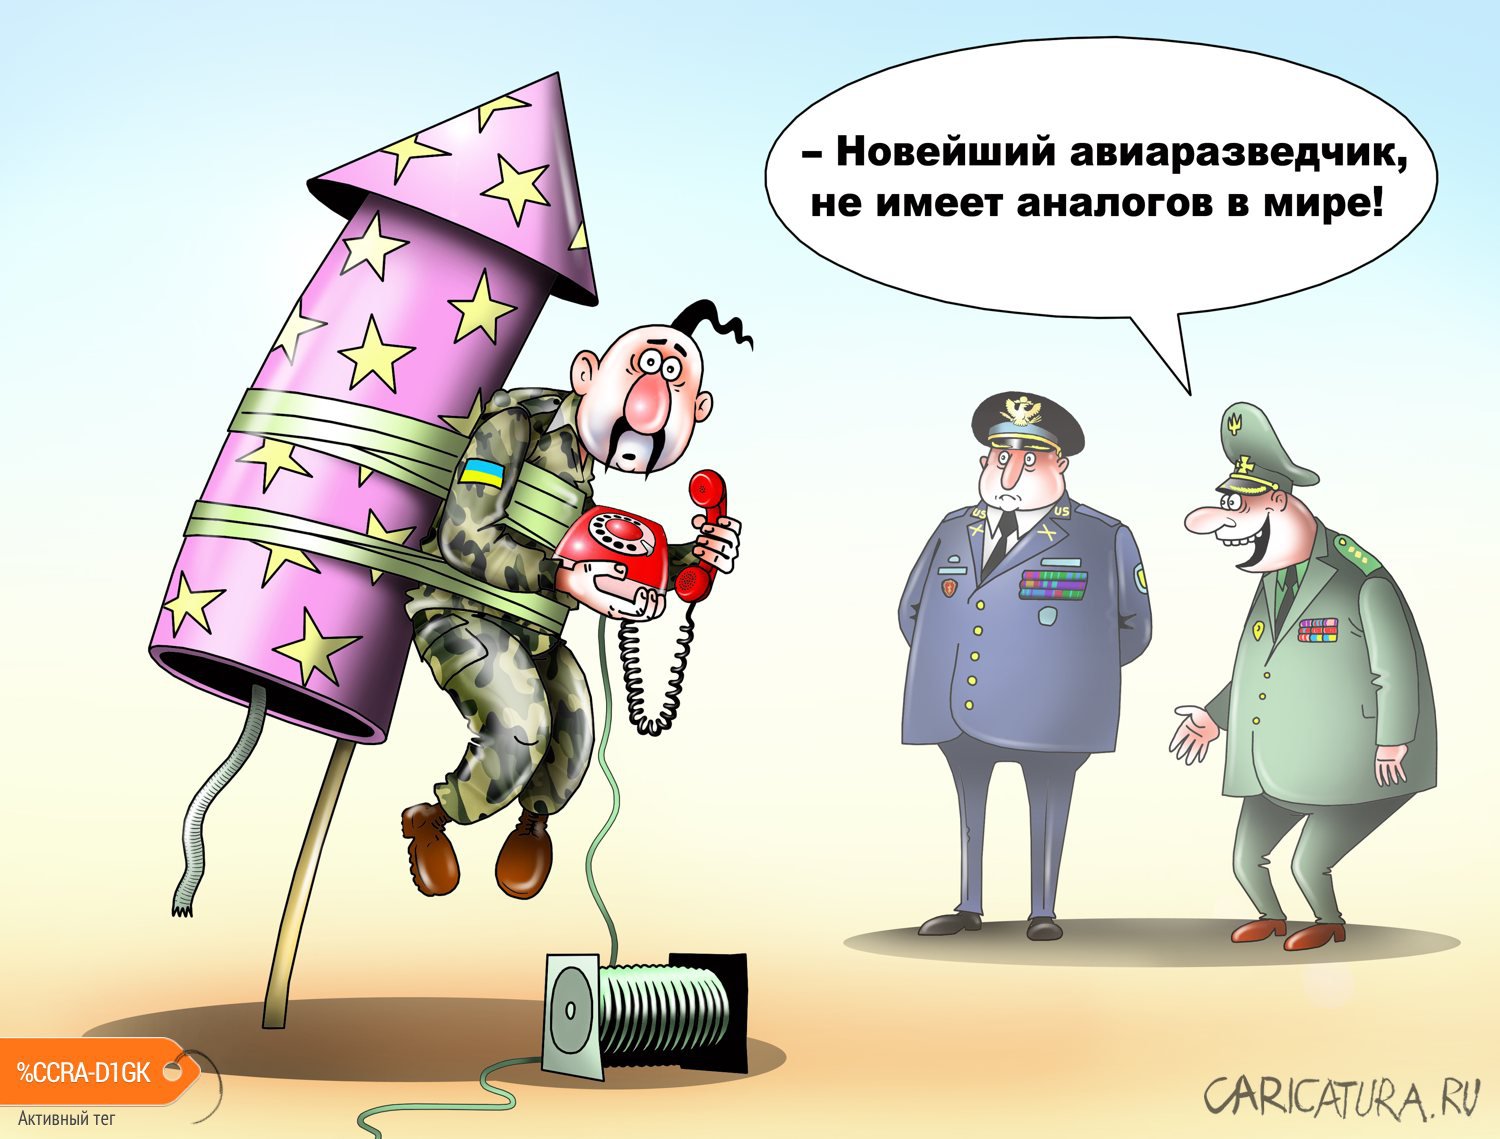 Карикатура "Украинский авиаразведчик", Сергей Корсун